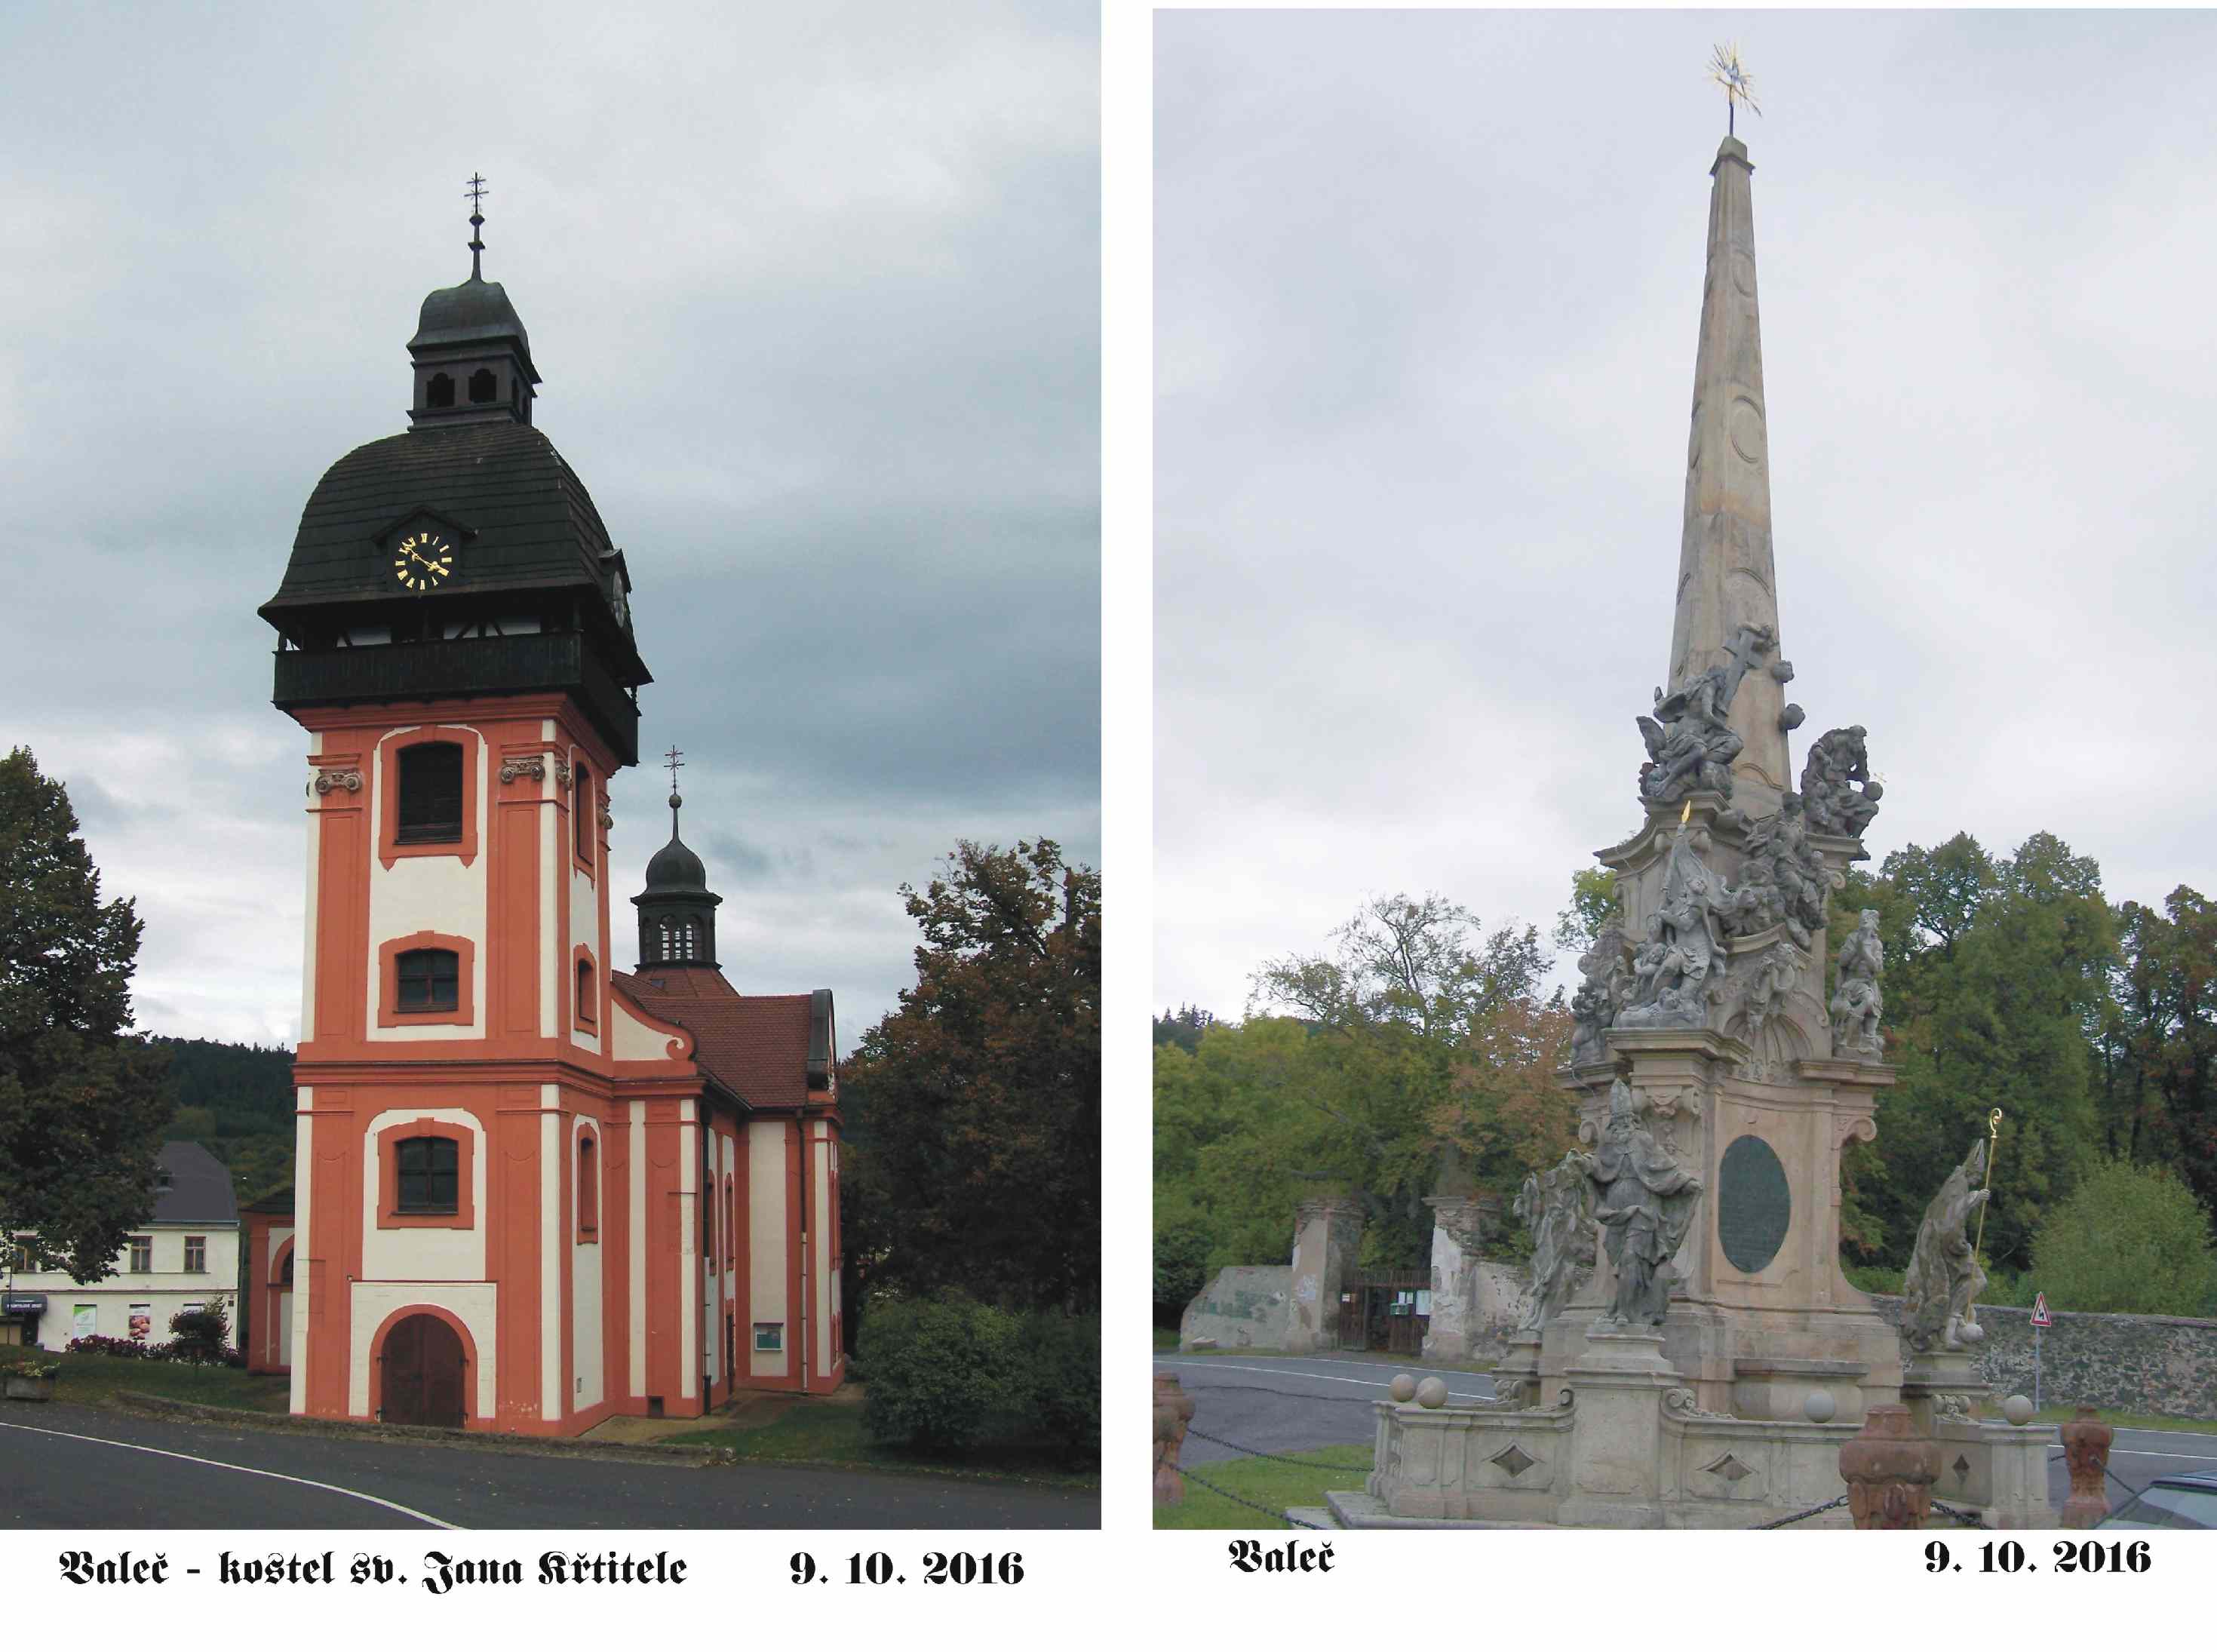 Valeč- kostel sv. Jana Křtitele a sloup Nejsvětější Trojice